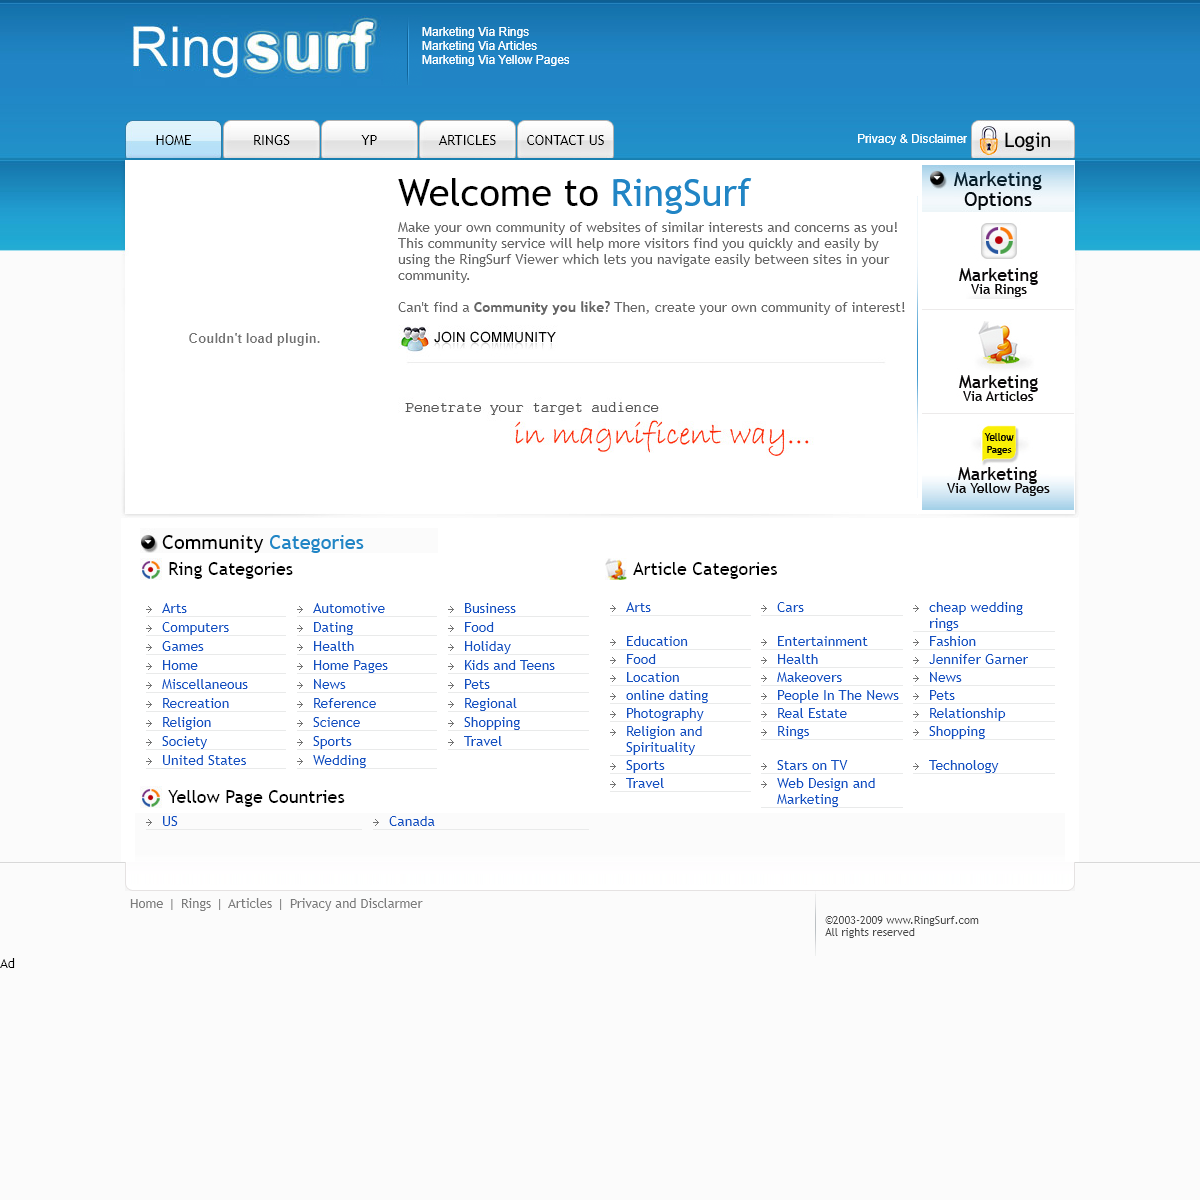 A complete backup of ringsurf.com